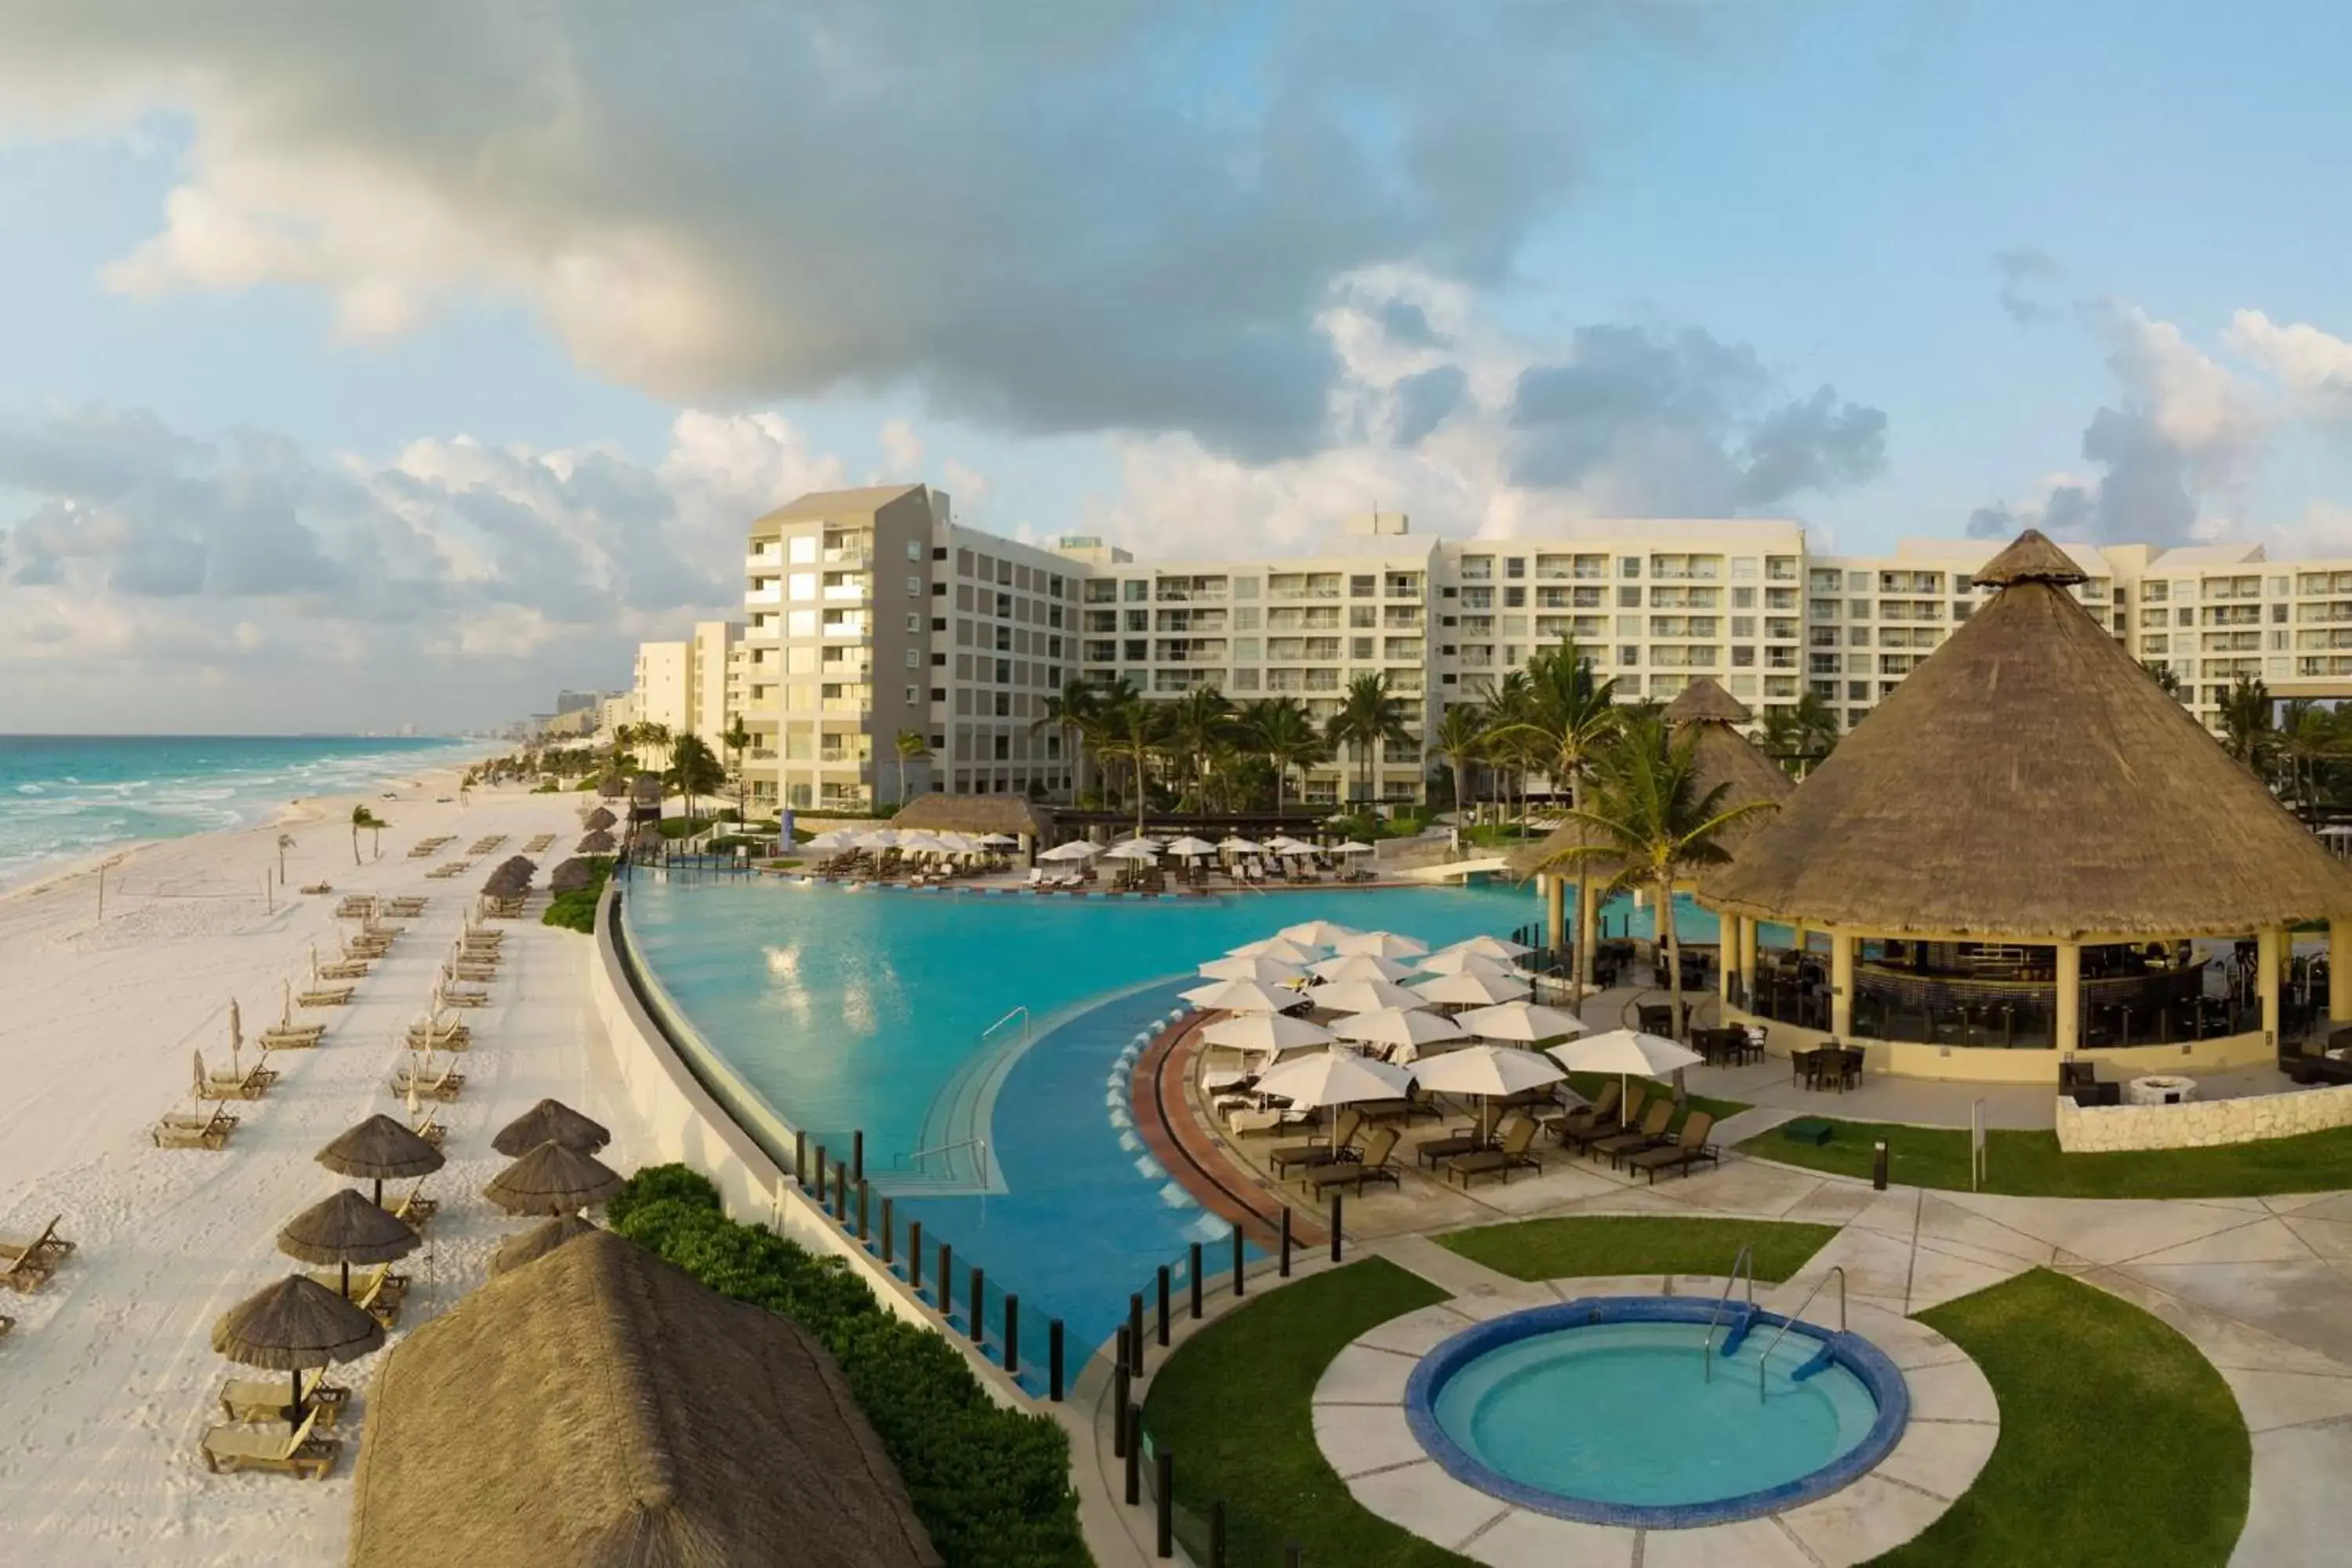 Swimming pool, Pool View in The Westin Lagunamar Ocean Resort Villas & Spa Cancun